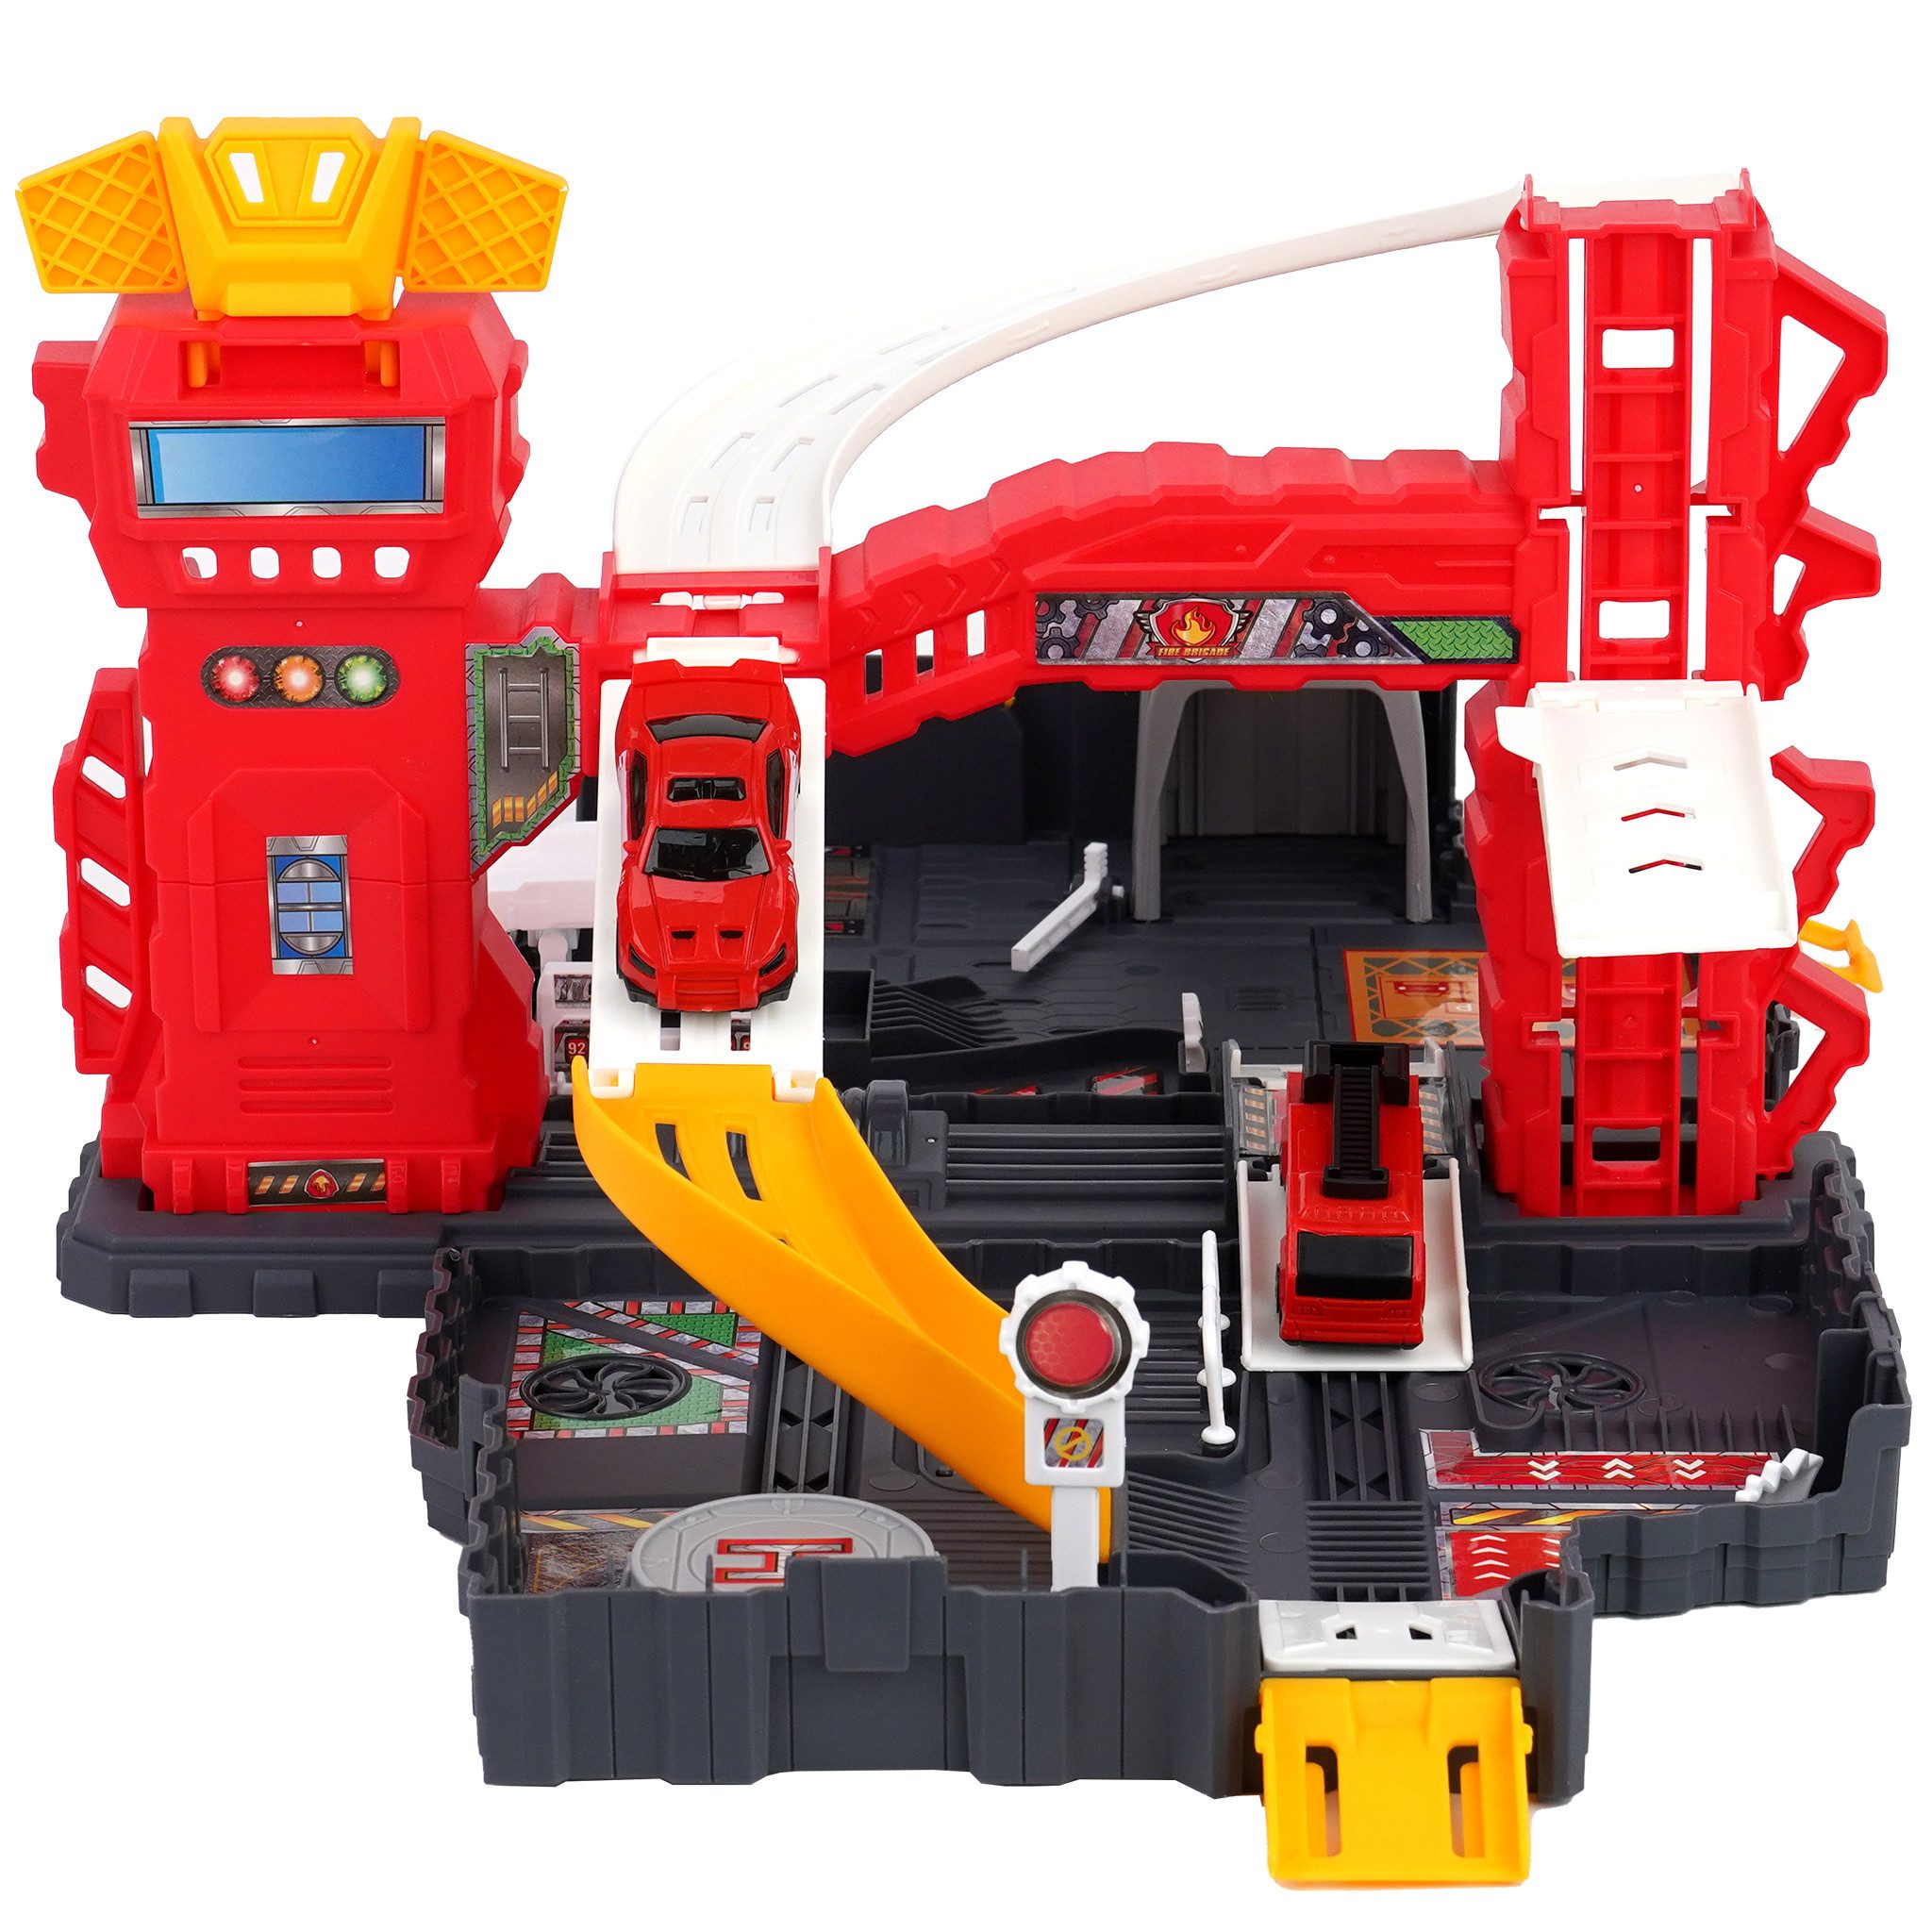 LBLA Spiel-Parkgarage Tragbare Feuerwehrauto Spielzeug, Parkhaus für Kinder ab 3 Jahren